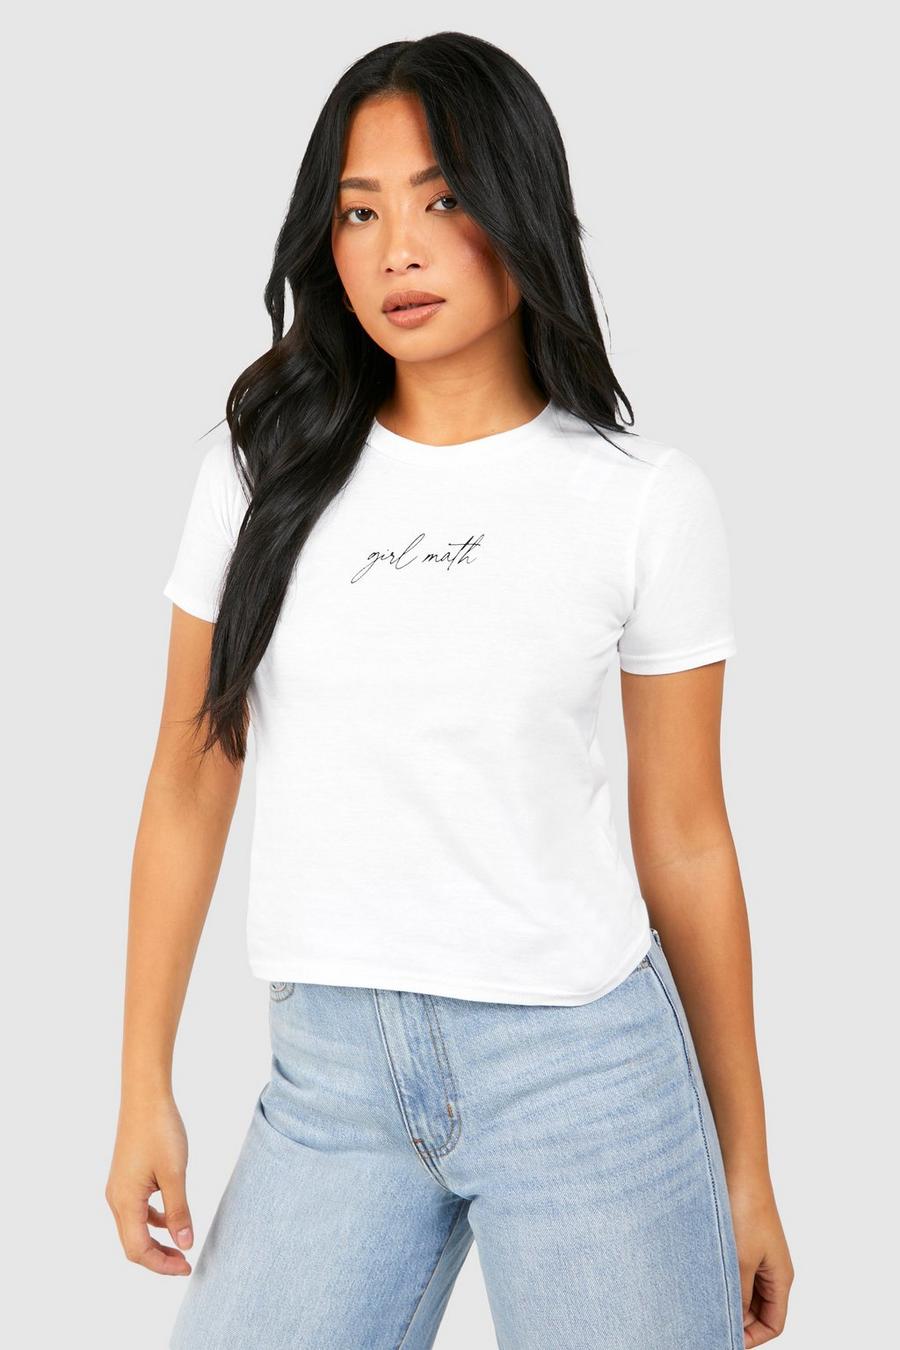 Petite Girl Words Baby T-Shirt, White